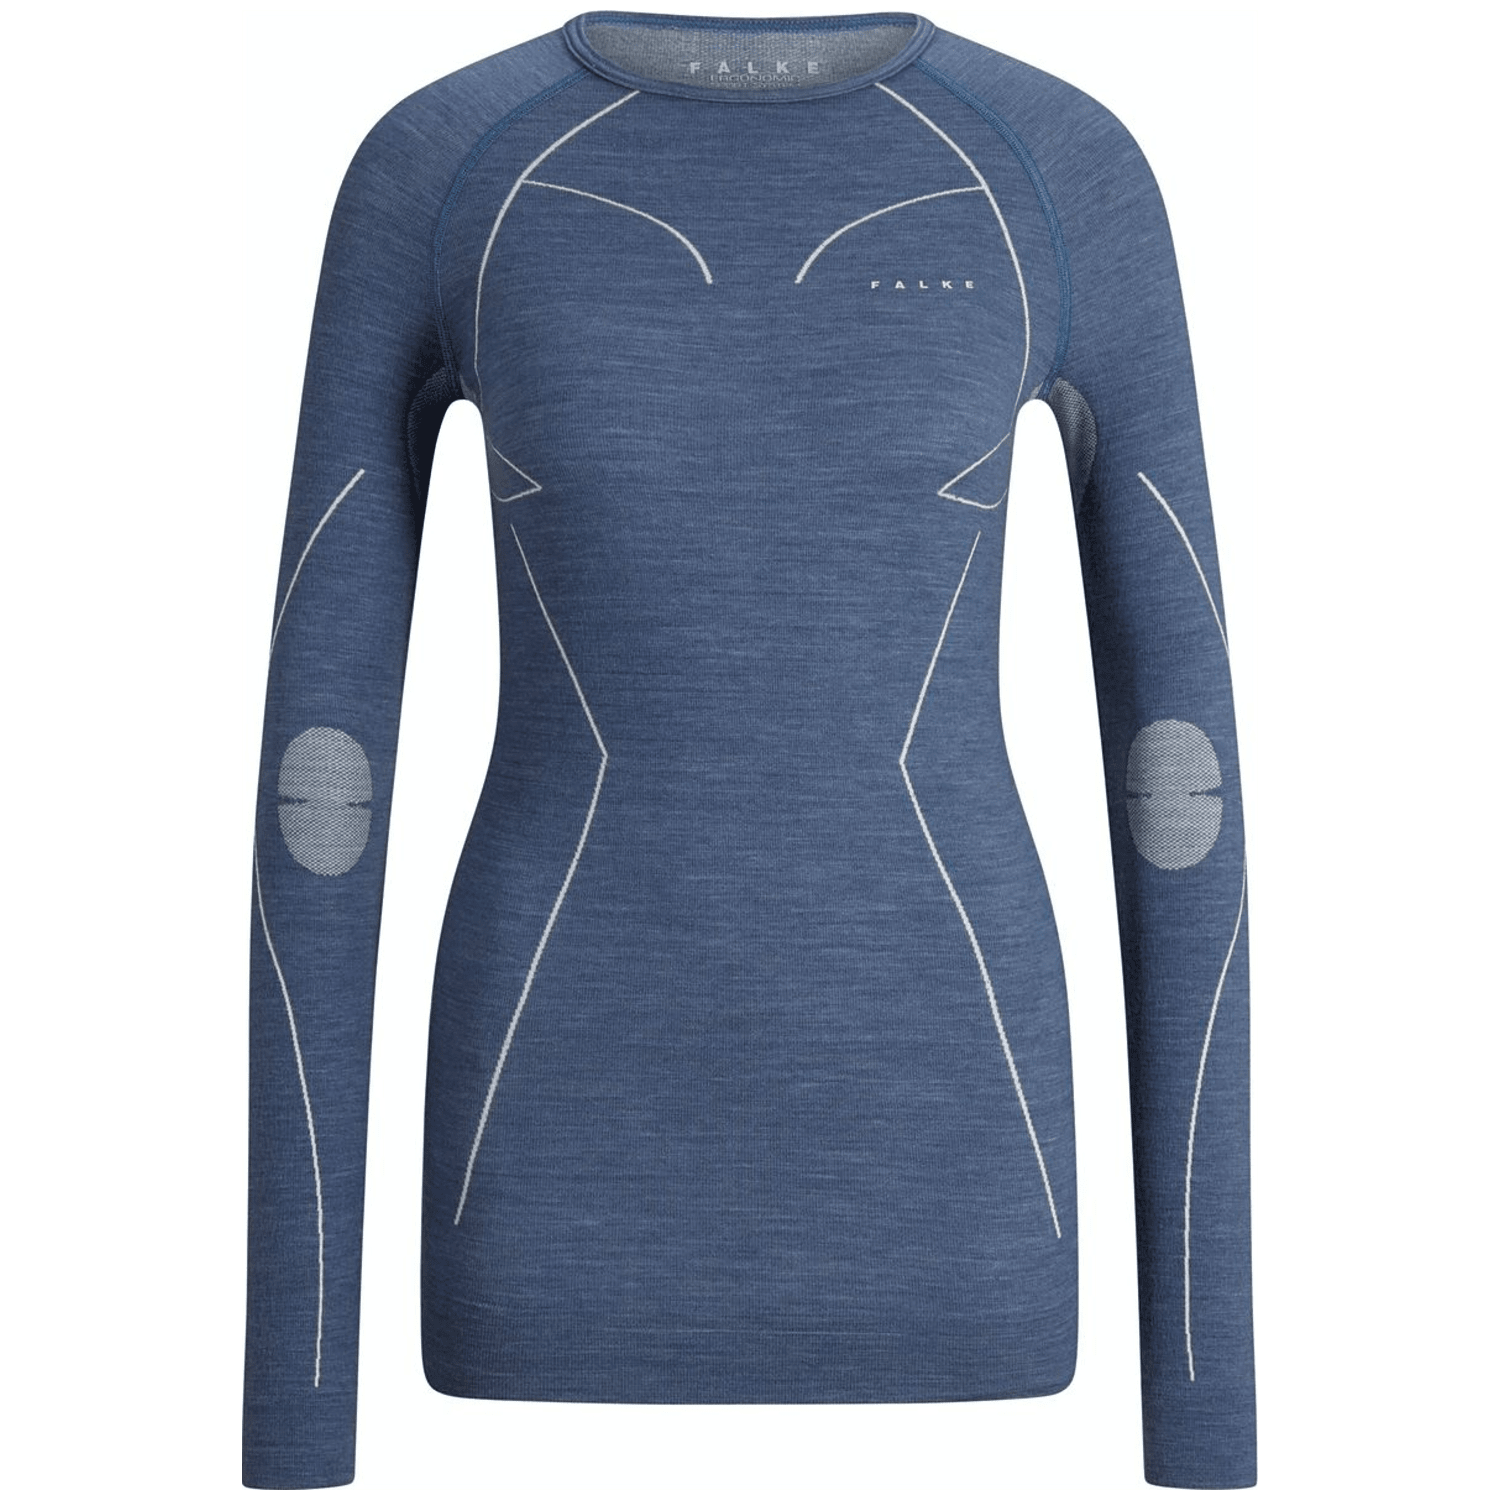 Falke Wool-Tech Regular Damen Unterhemd